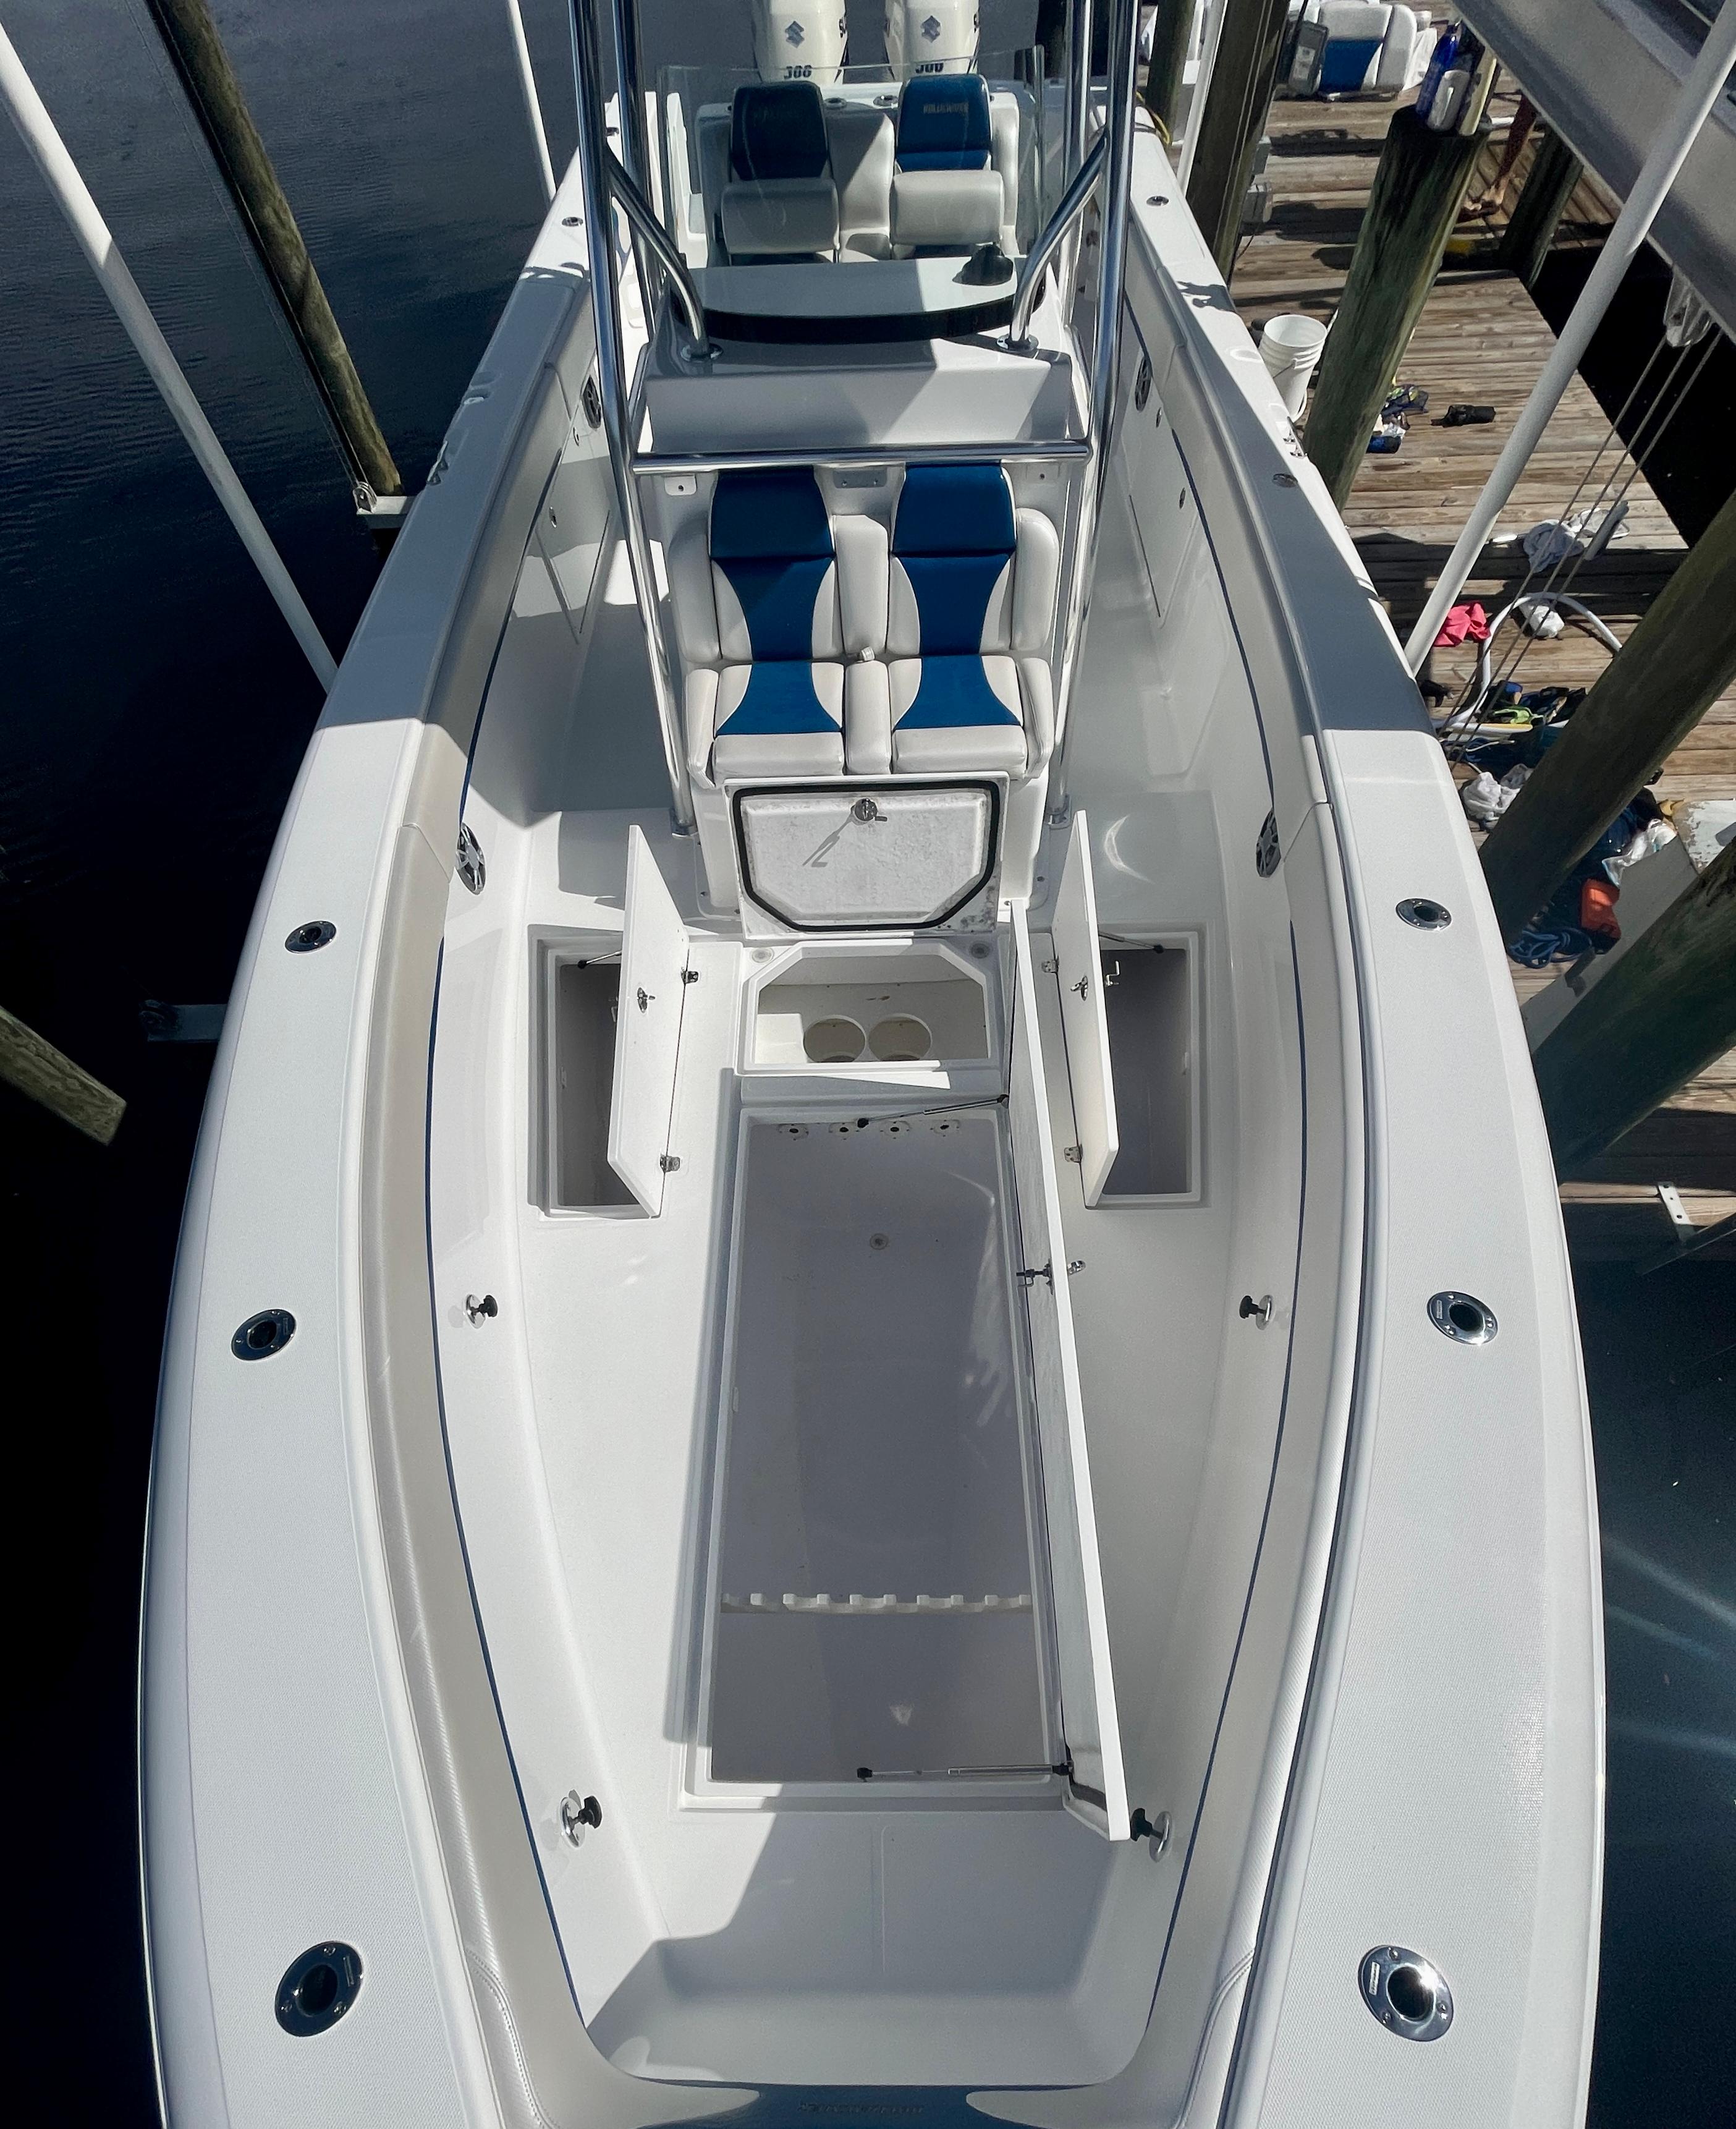 2016 Bluewater 2850 - FWD deck hatch